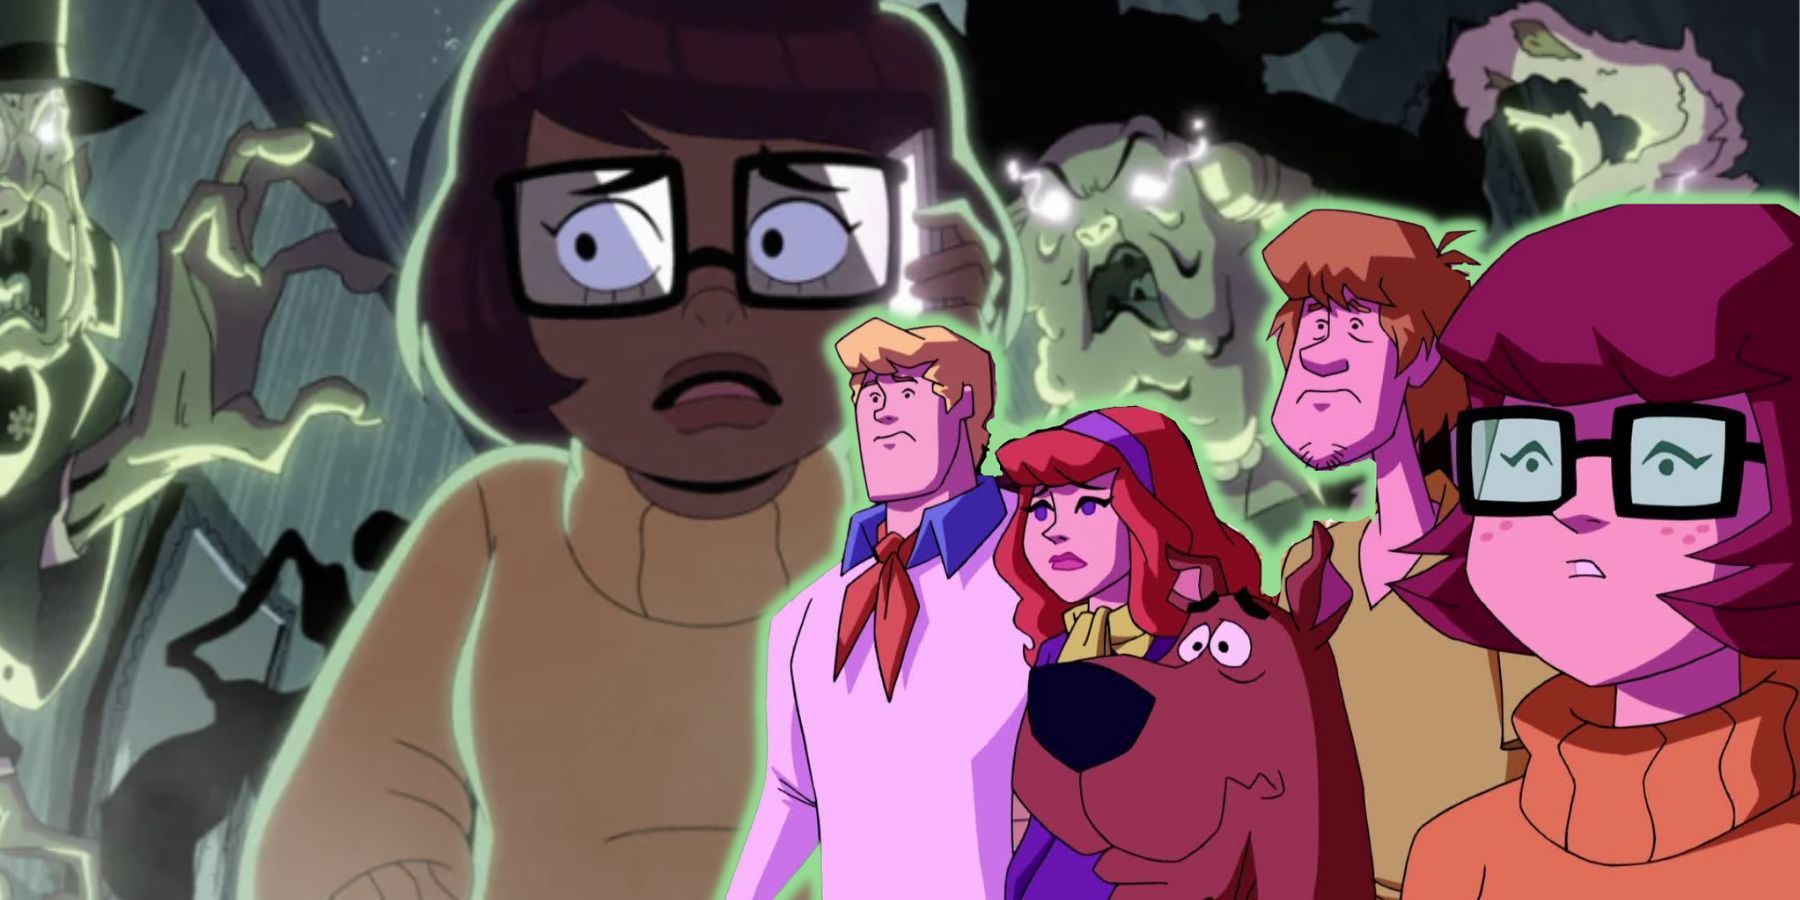 Jinkies! 'Velma' is the Worst-Rated Animated Series on IMDB